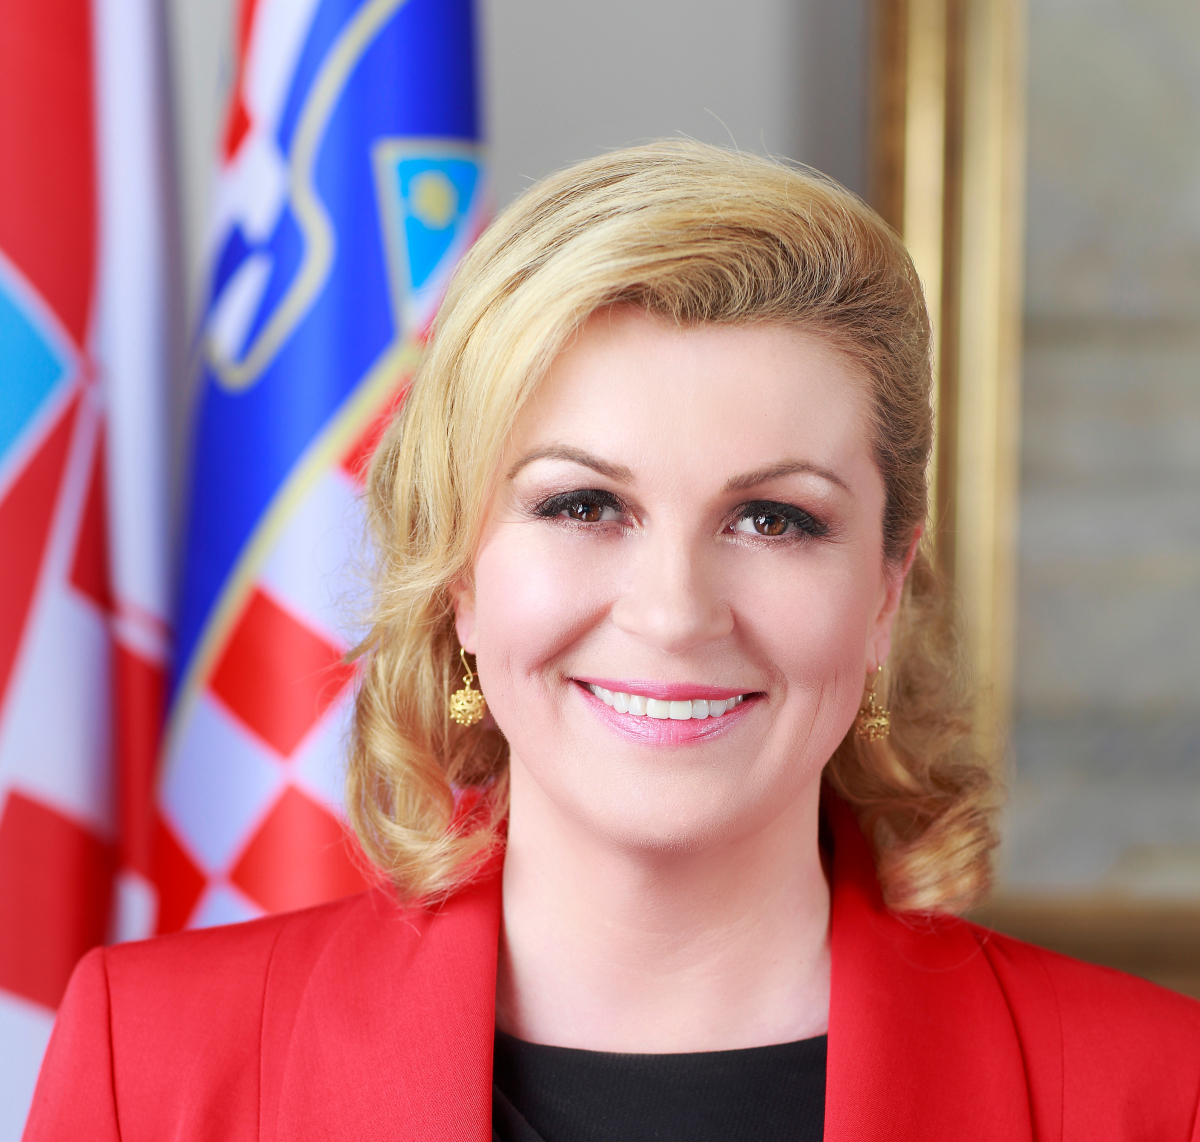 Predsjednica Republike Hrvatske Kolinda Grabar Kitarović